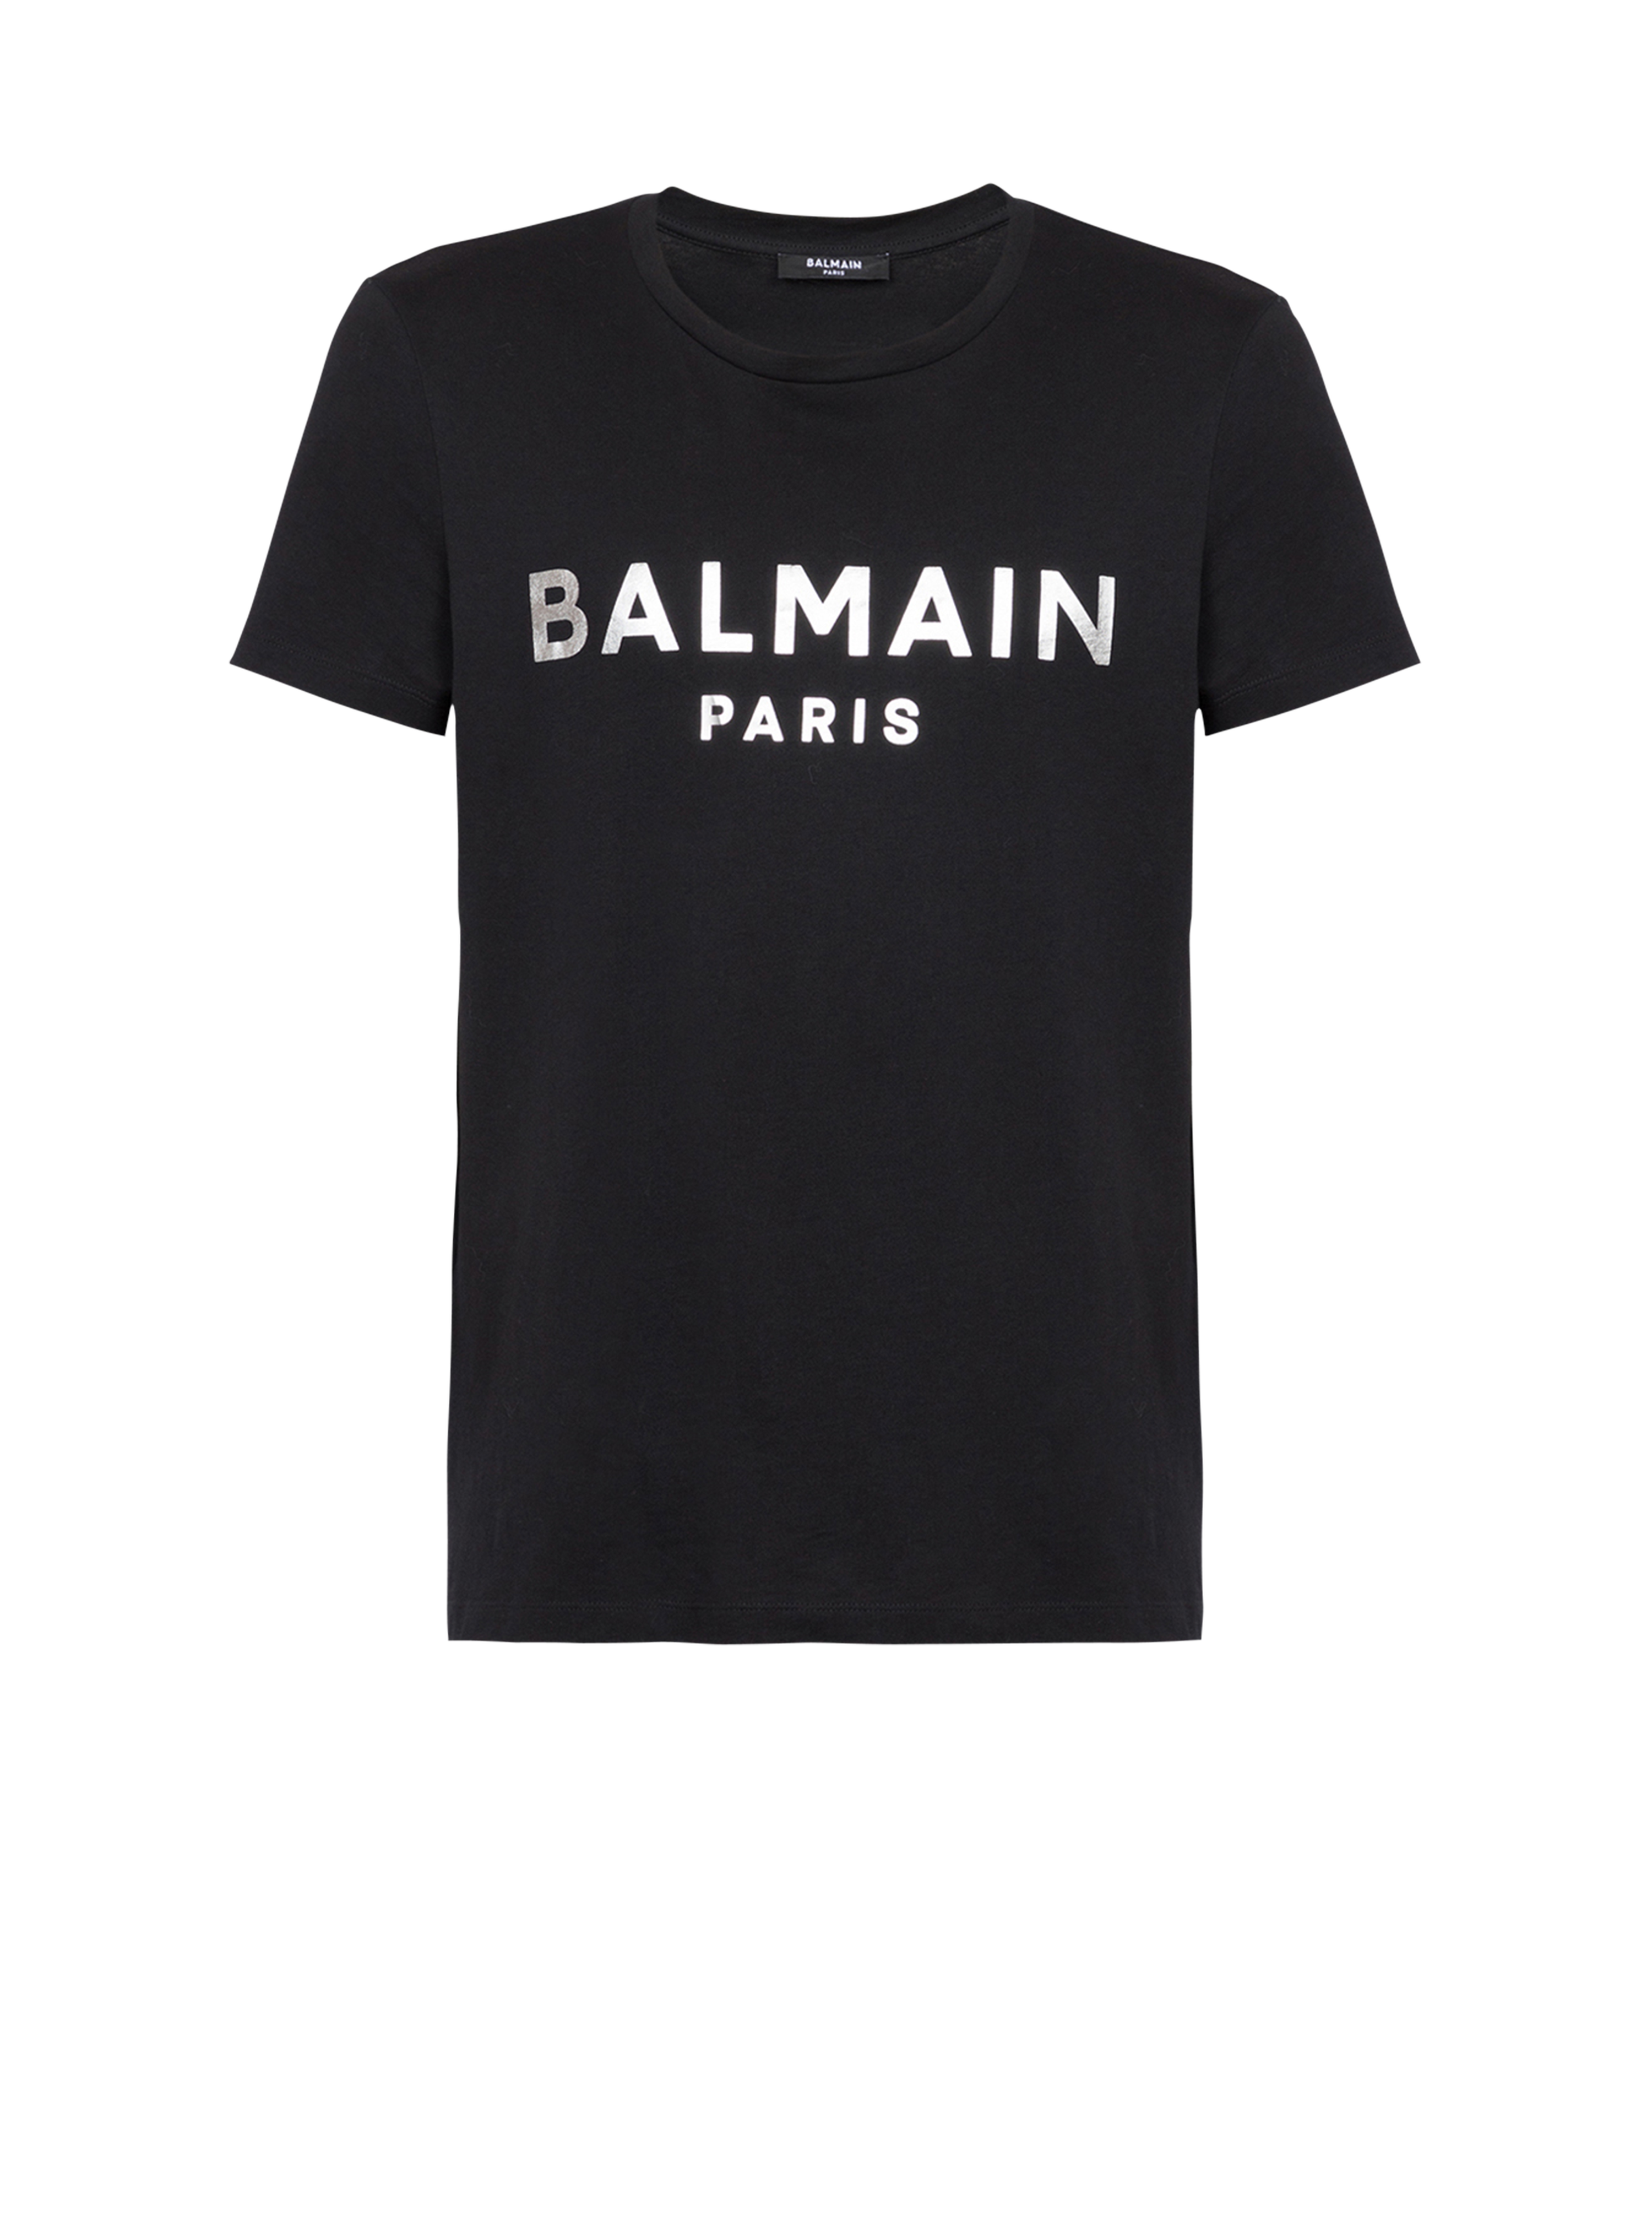 T-shirt en coton imprimé logo Balmain Paris, argent